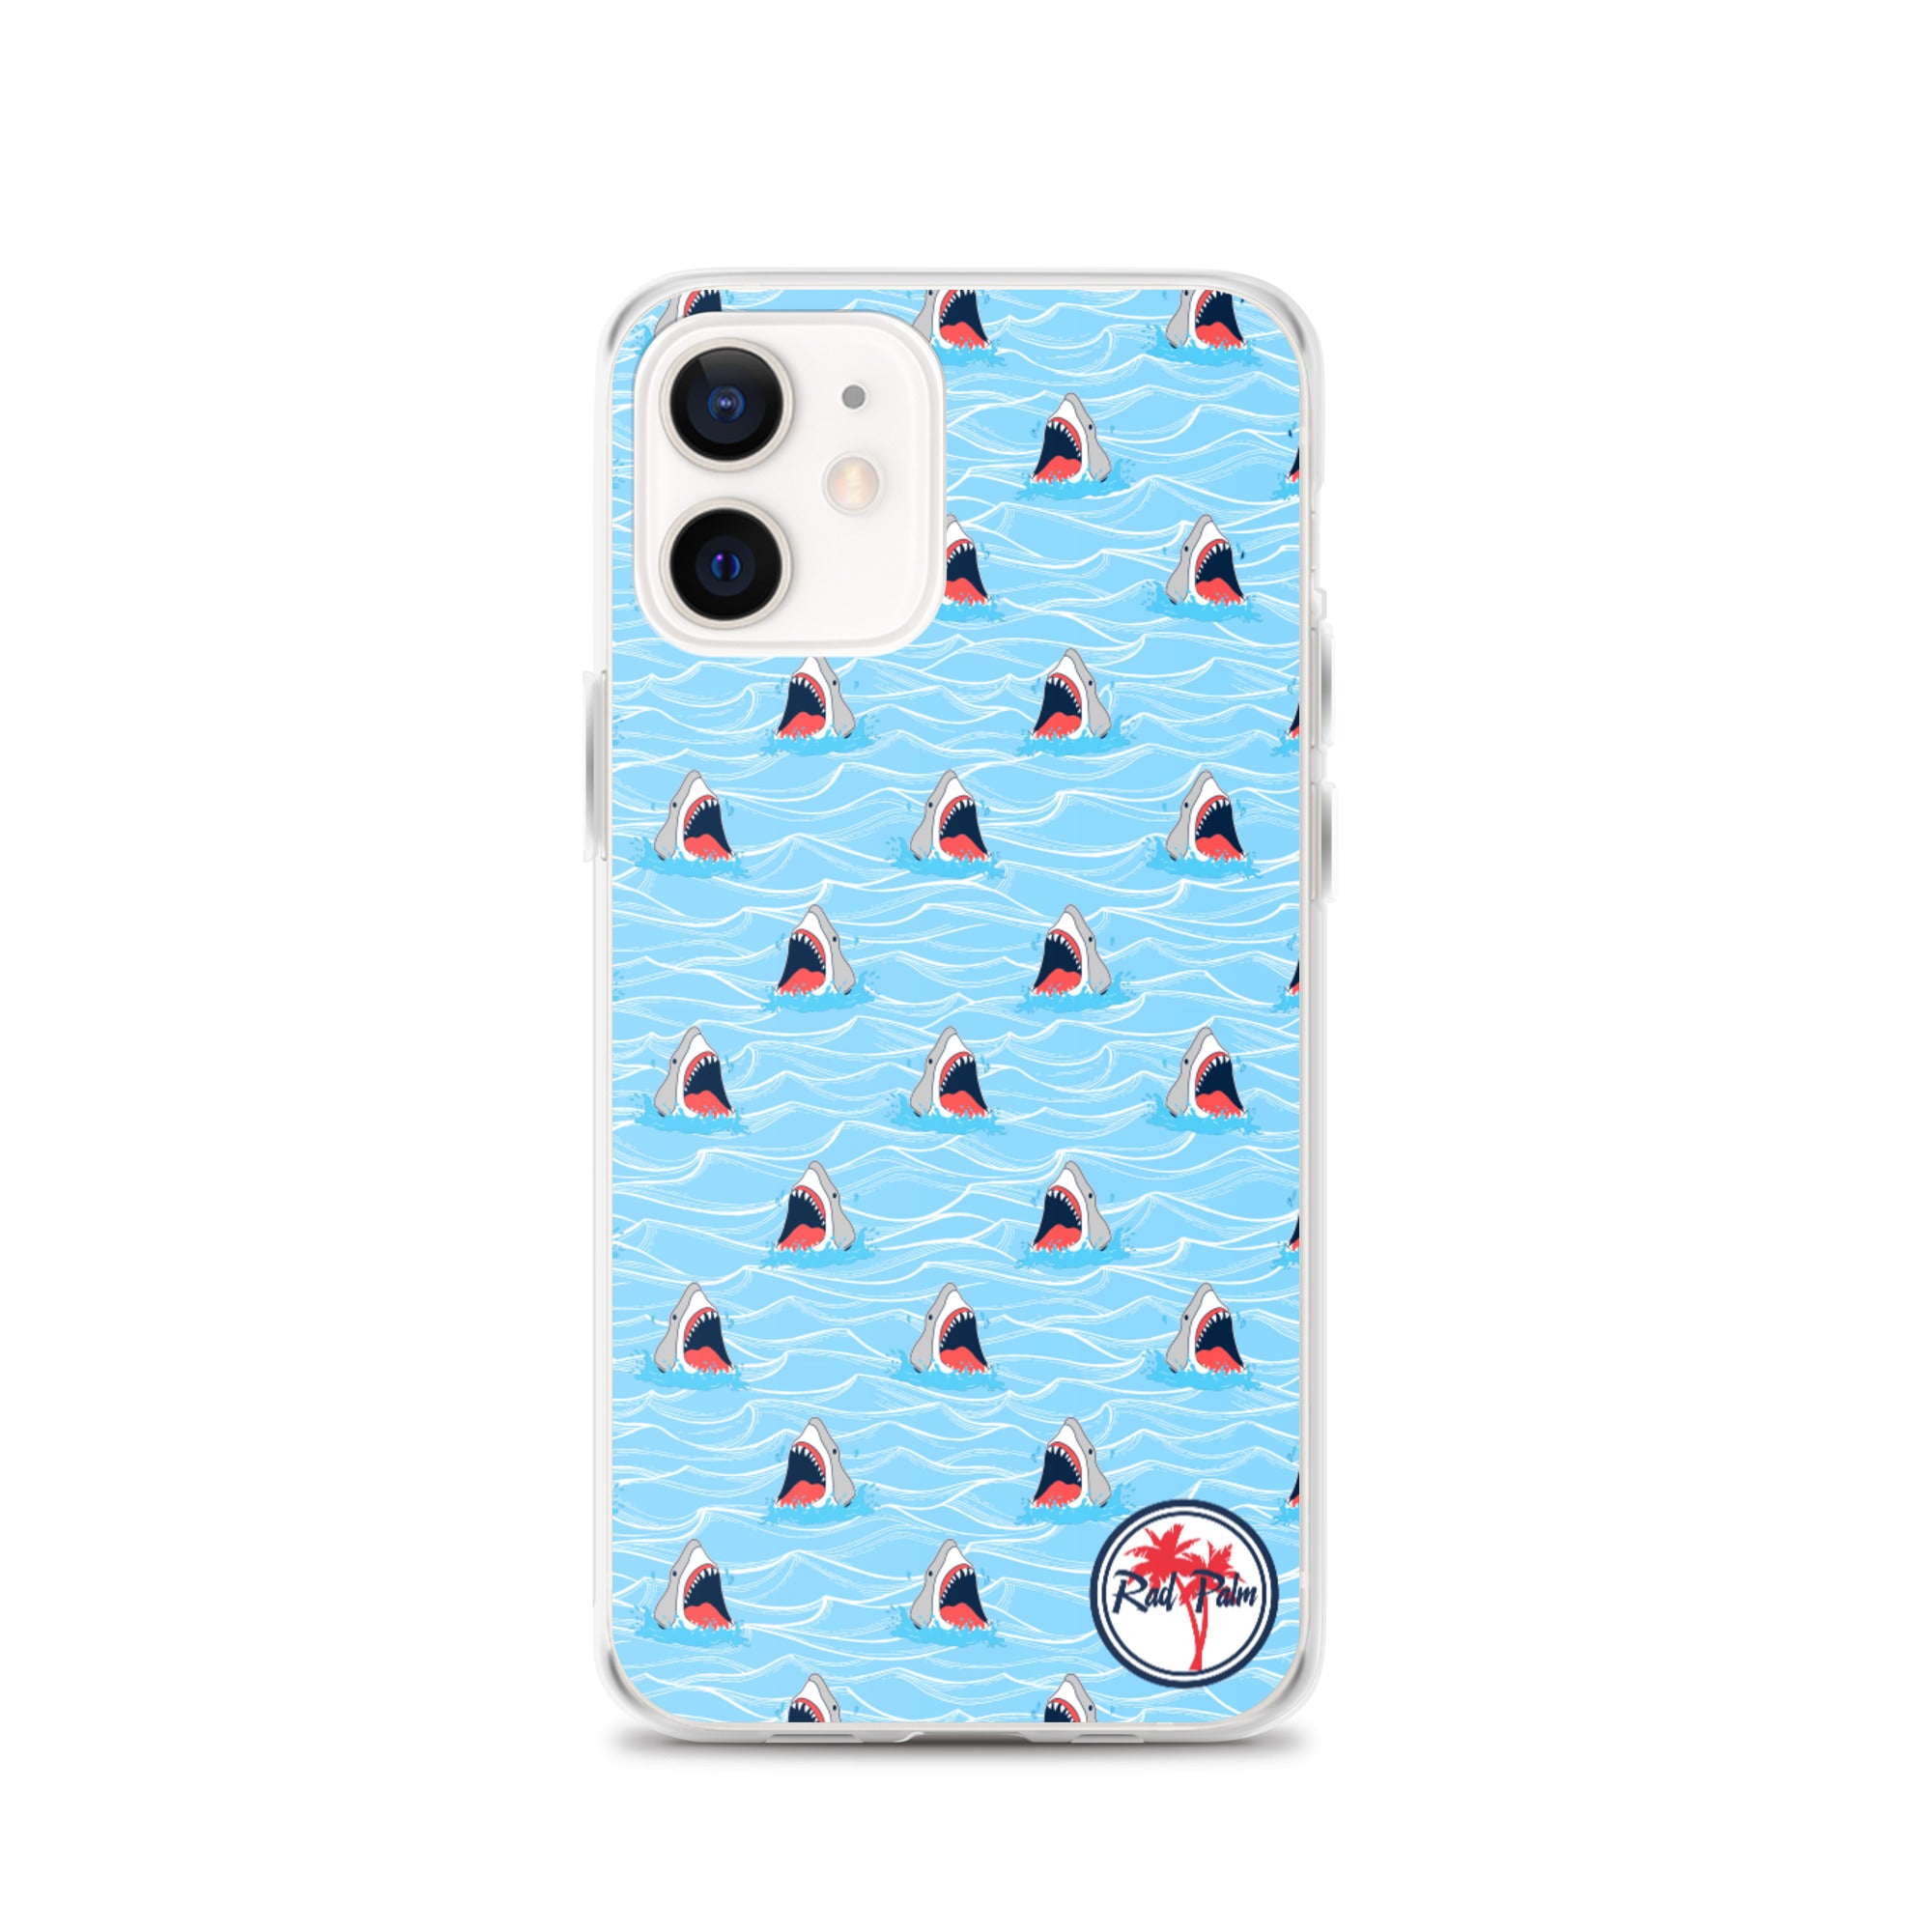 Shark Bait iPhone Case